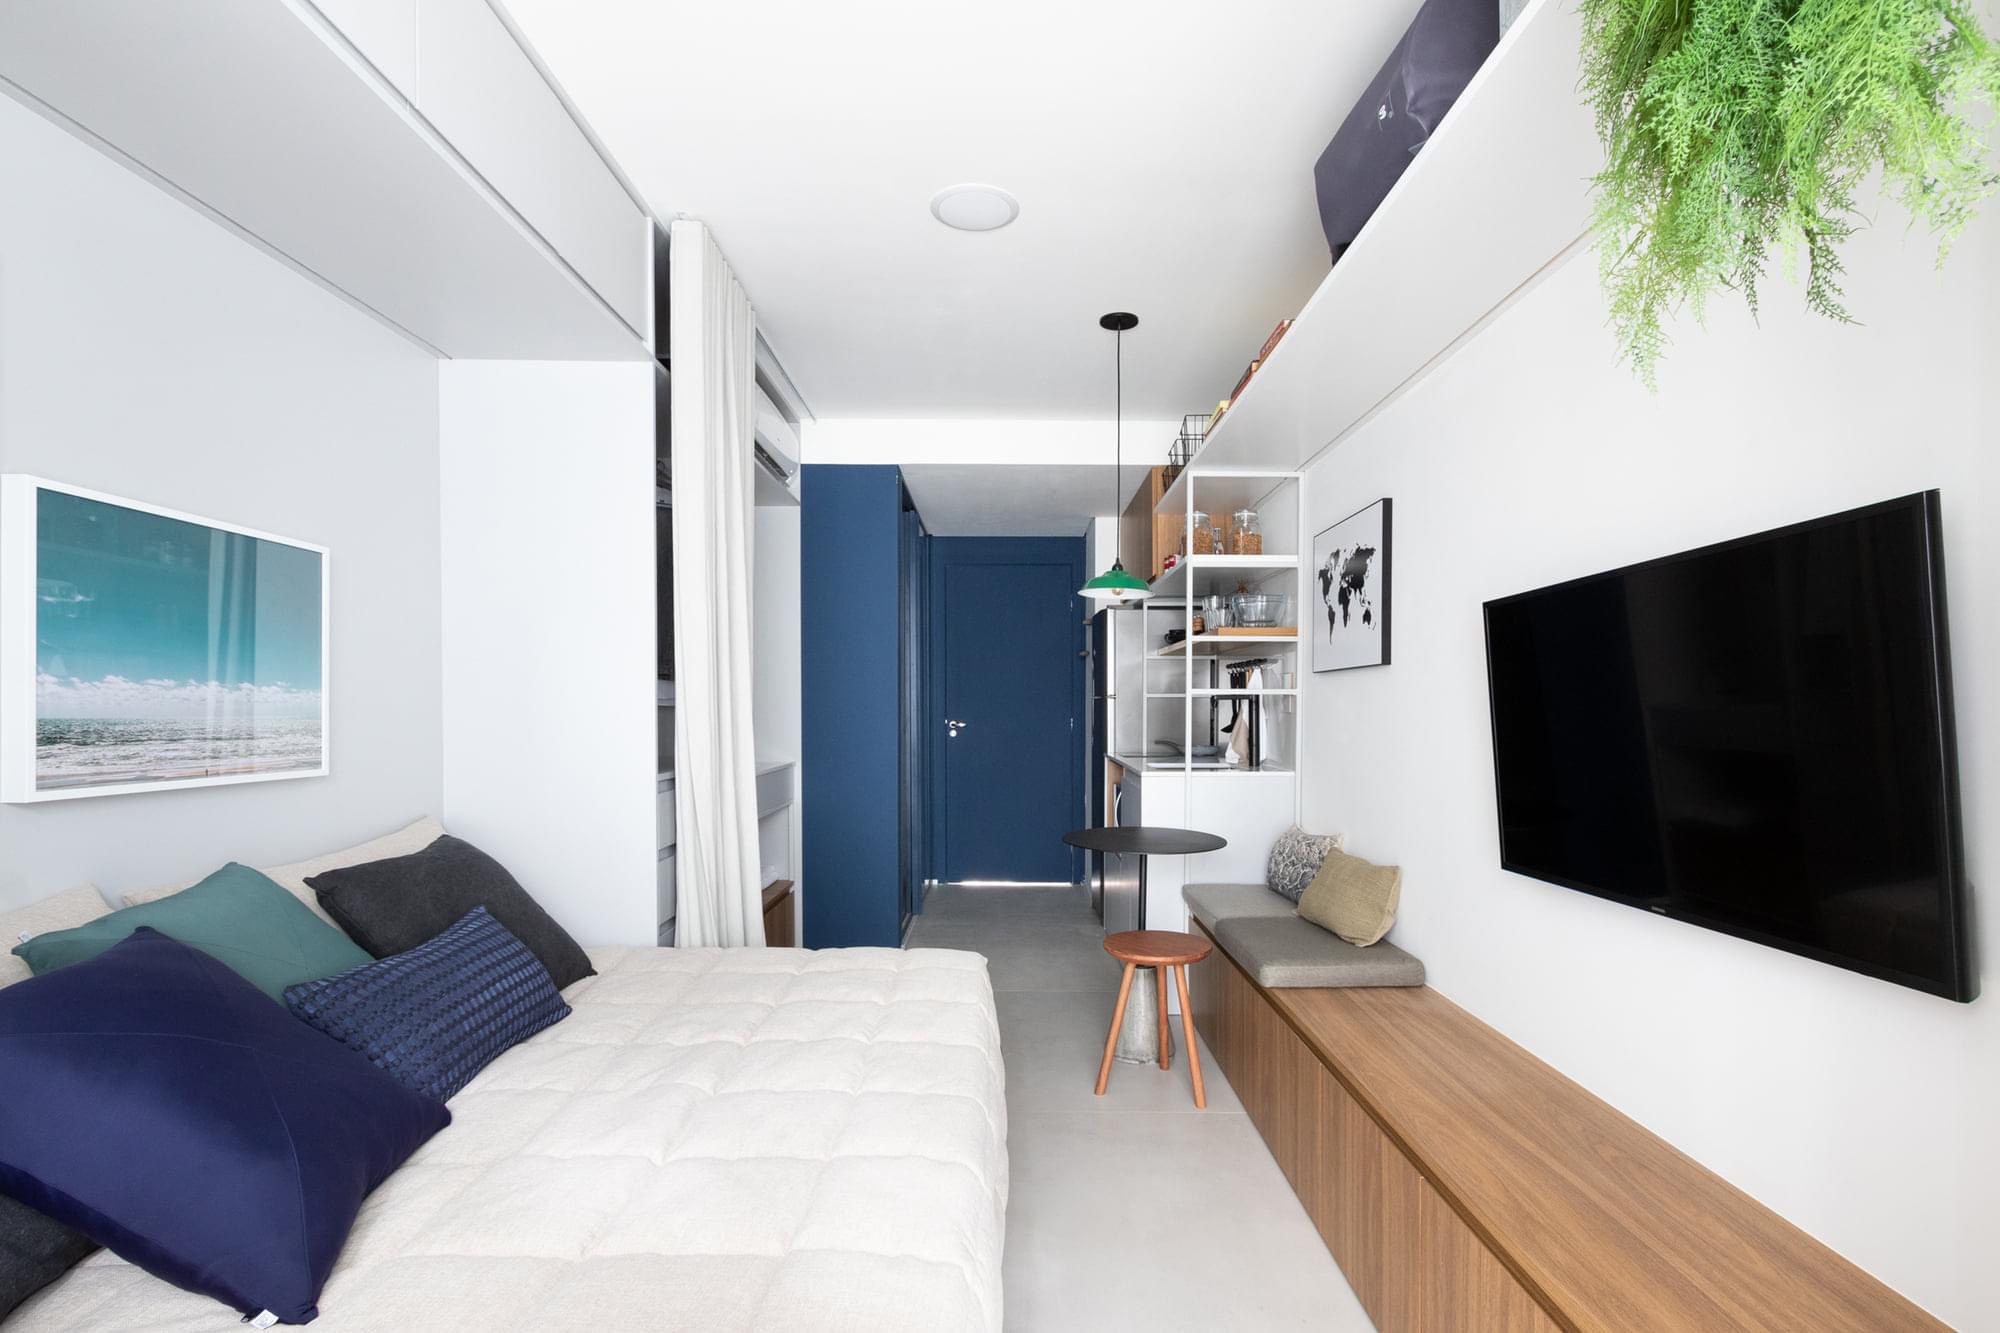 Cộng Design chia sẻ bí quyết: Mẹo thiết kế nội thất nhà ở không gian nhỏ 